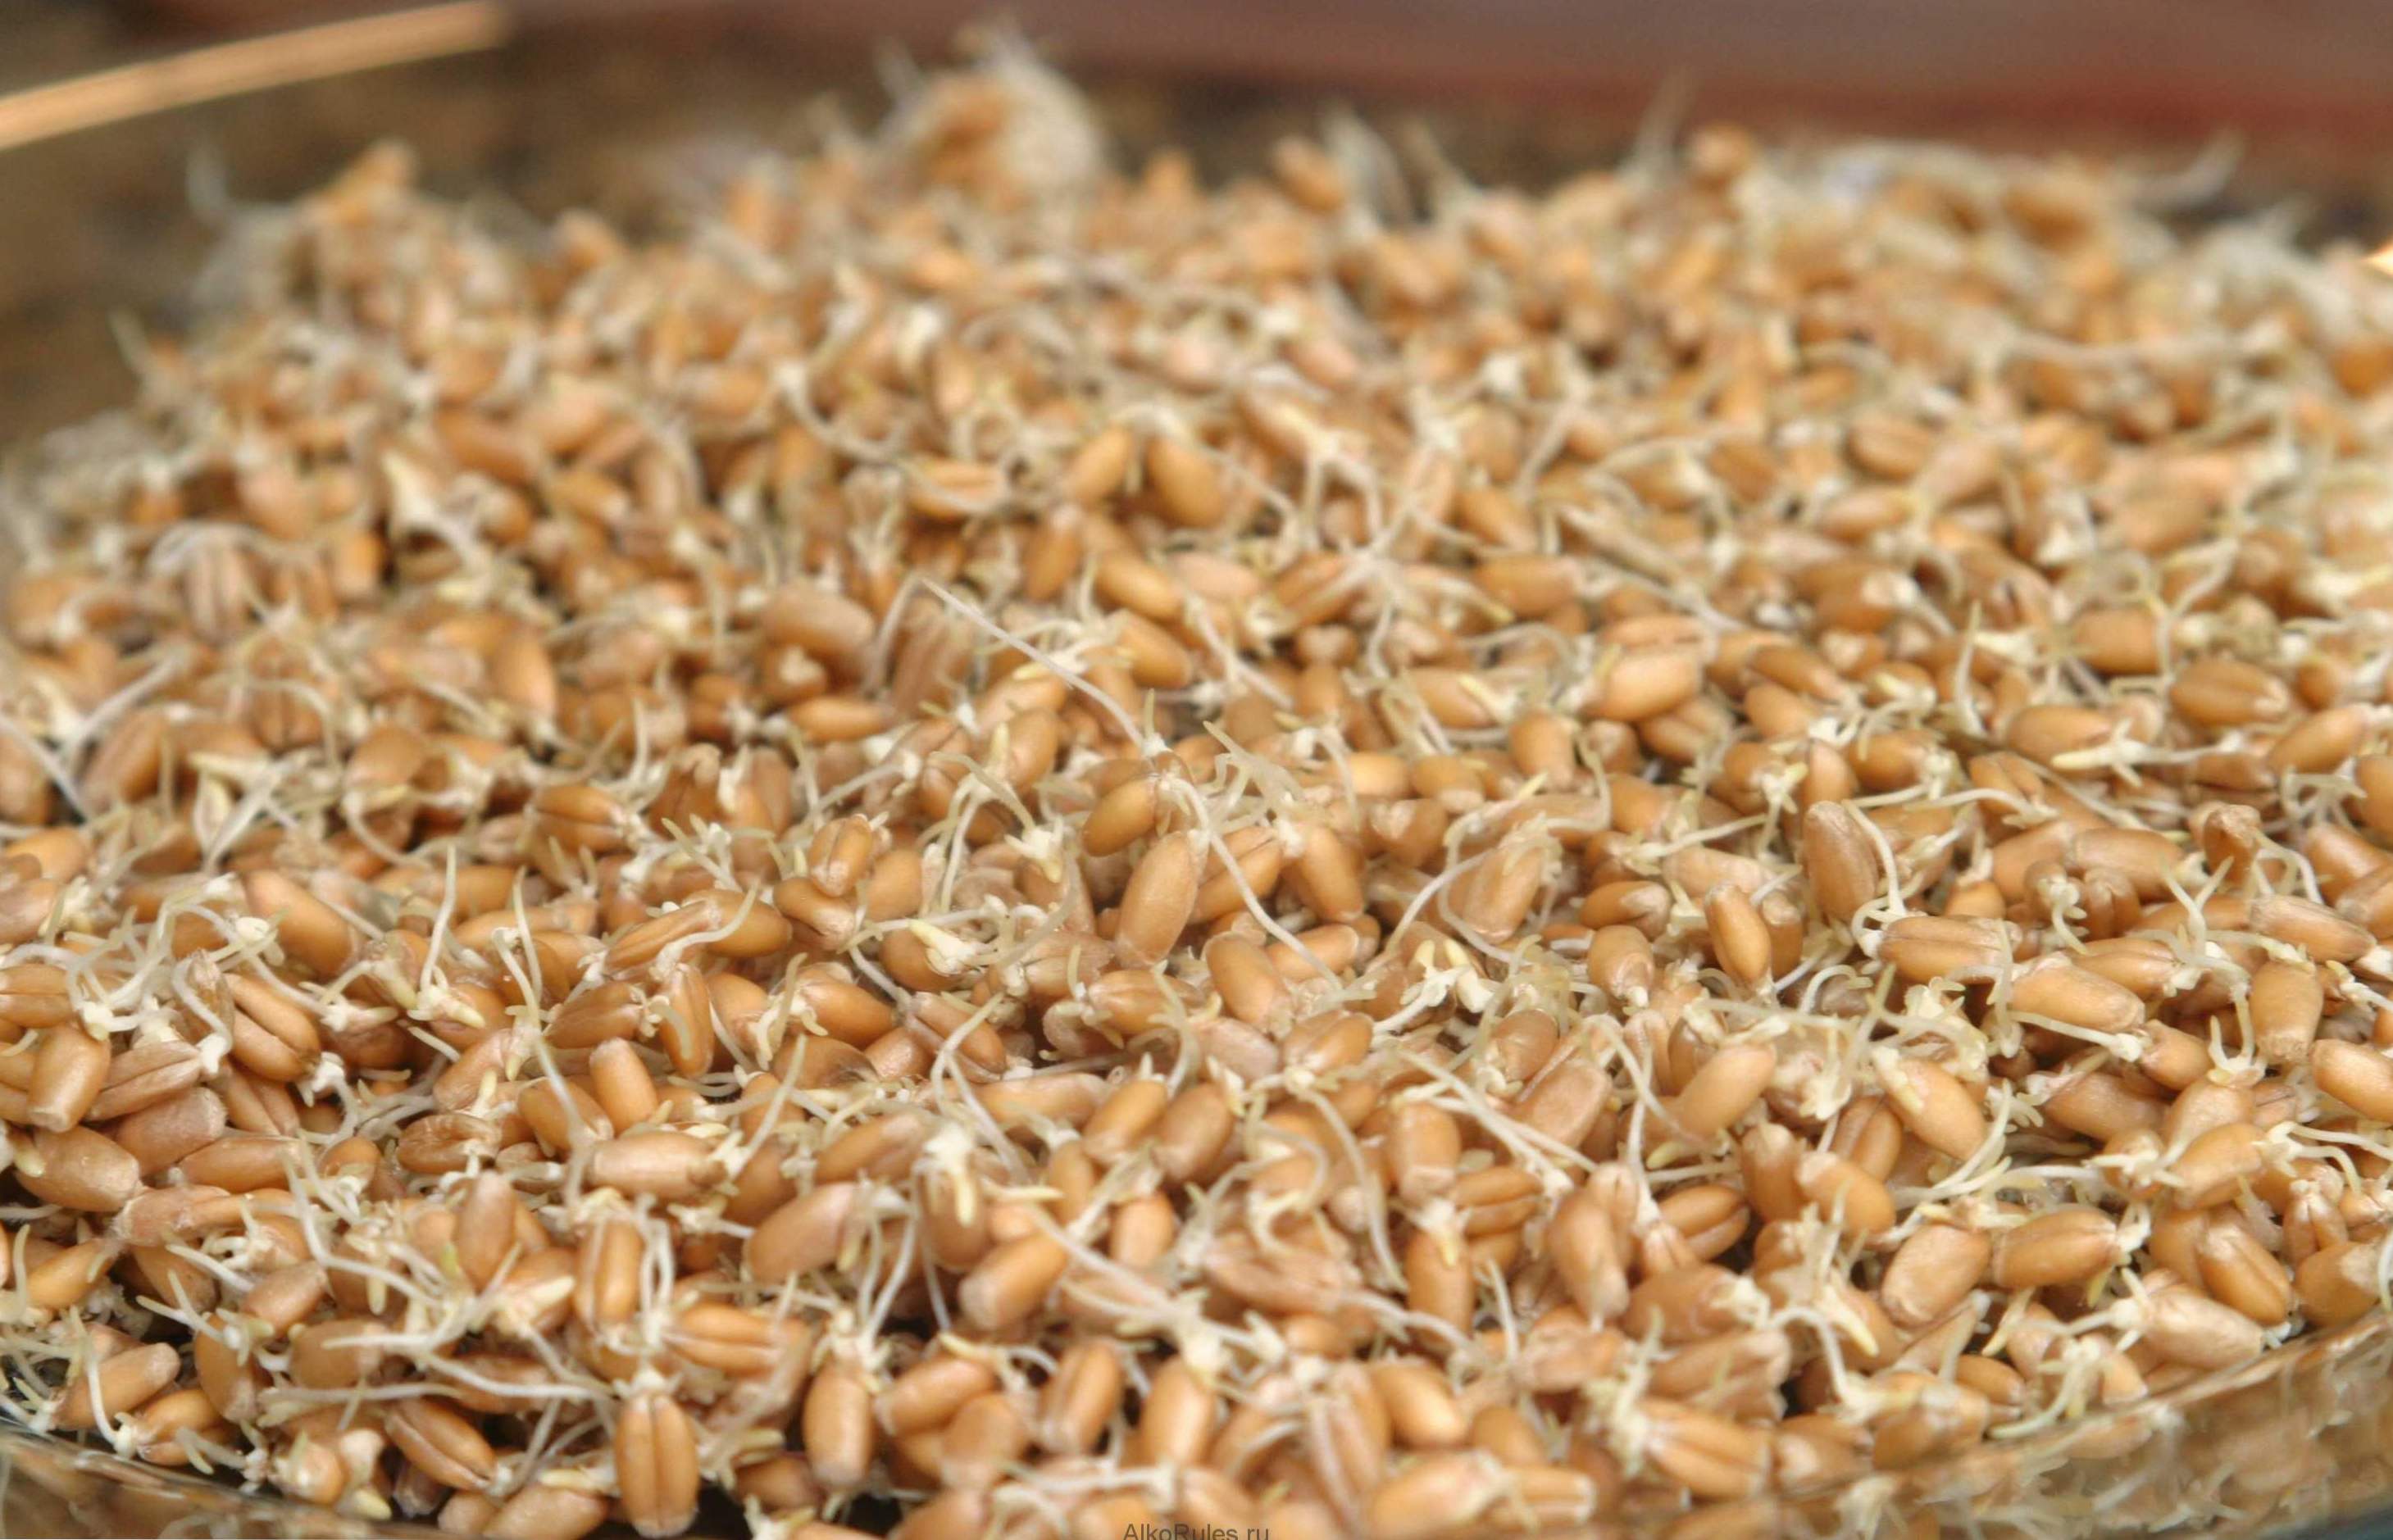 Klíčená pšenica - výhody a škody, ako vyklíčiť a používať doma?